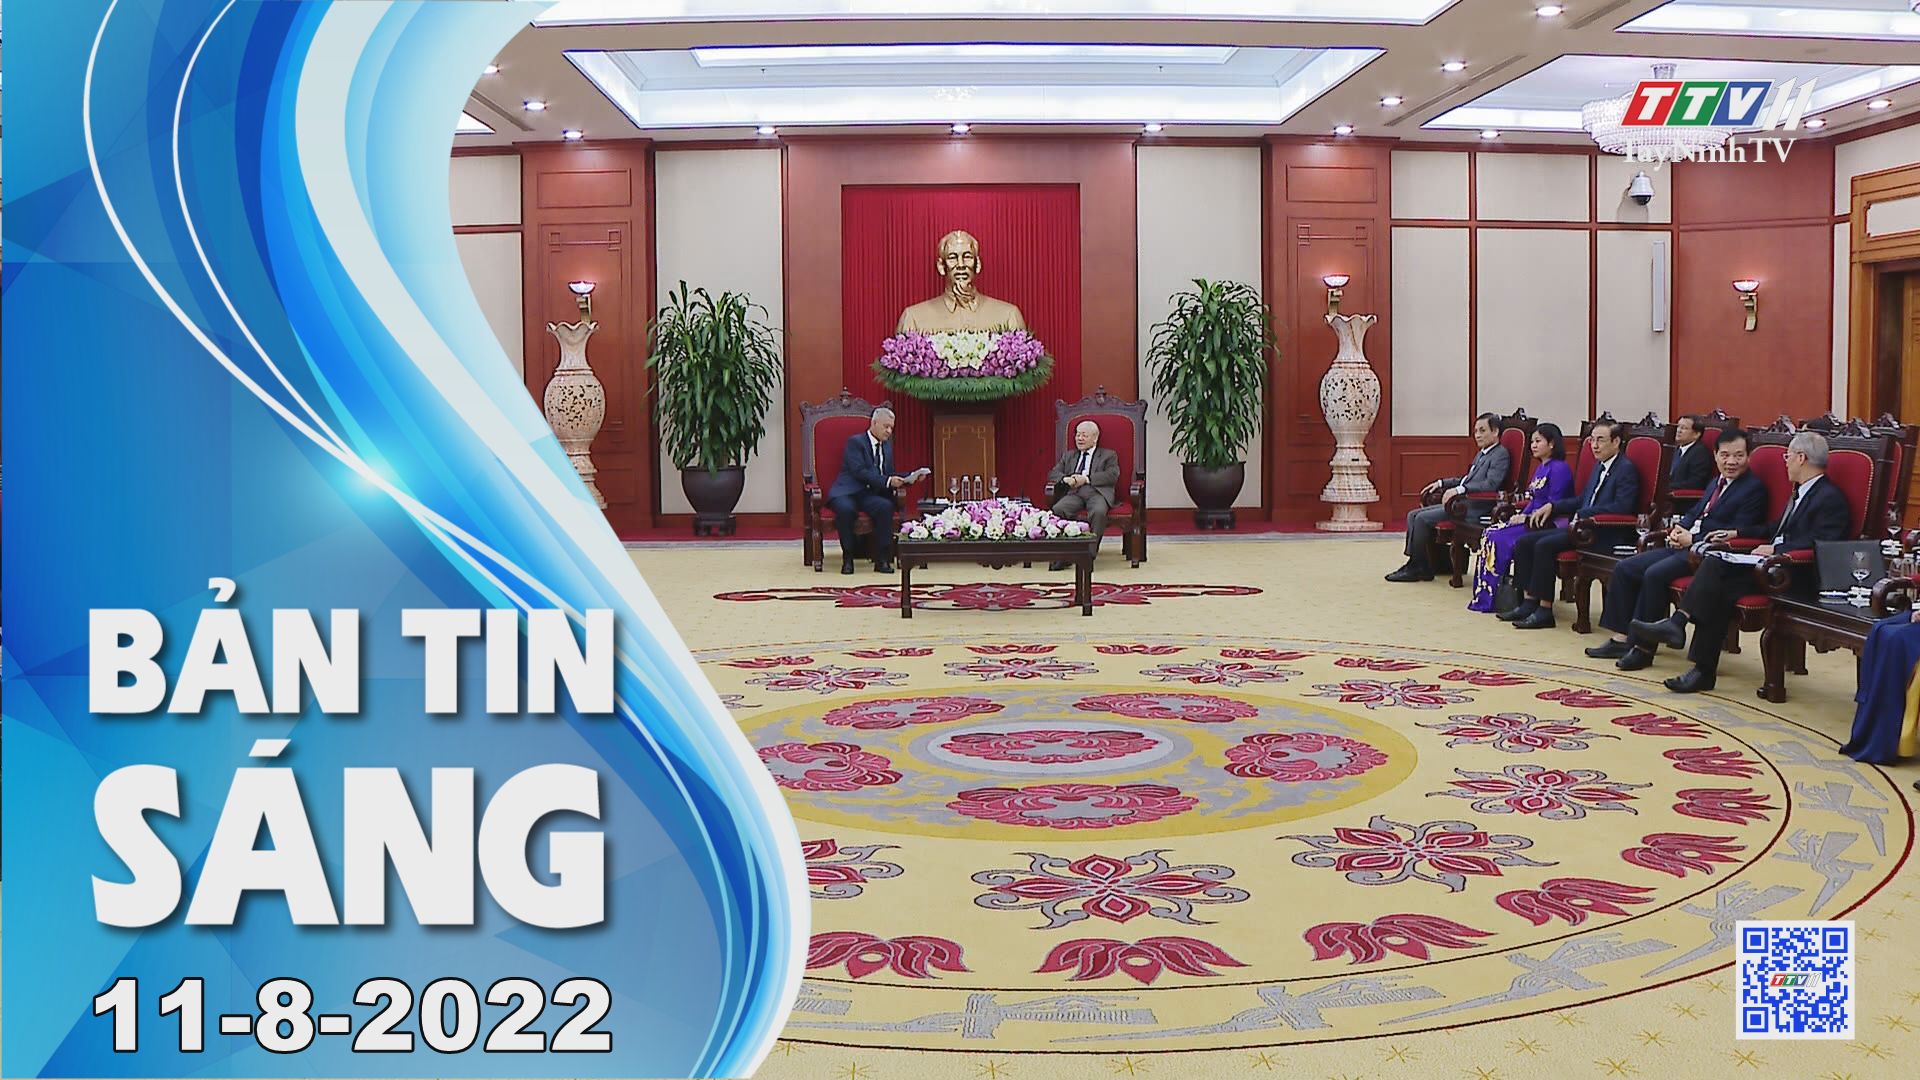 Bản tin sáng 11-8-2022 | Tin tức hôm nay | TayNinhTV